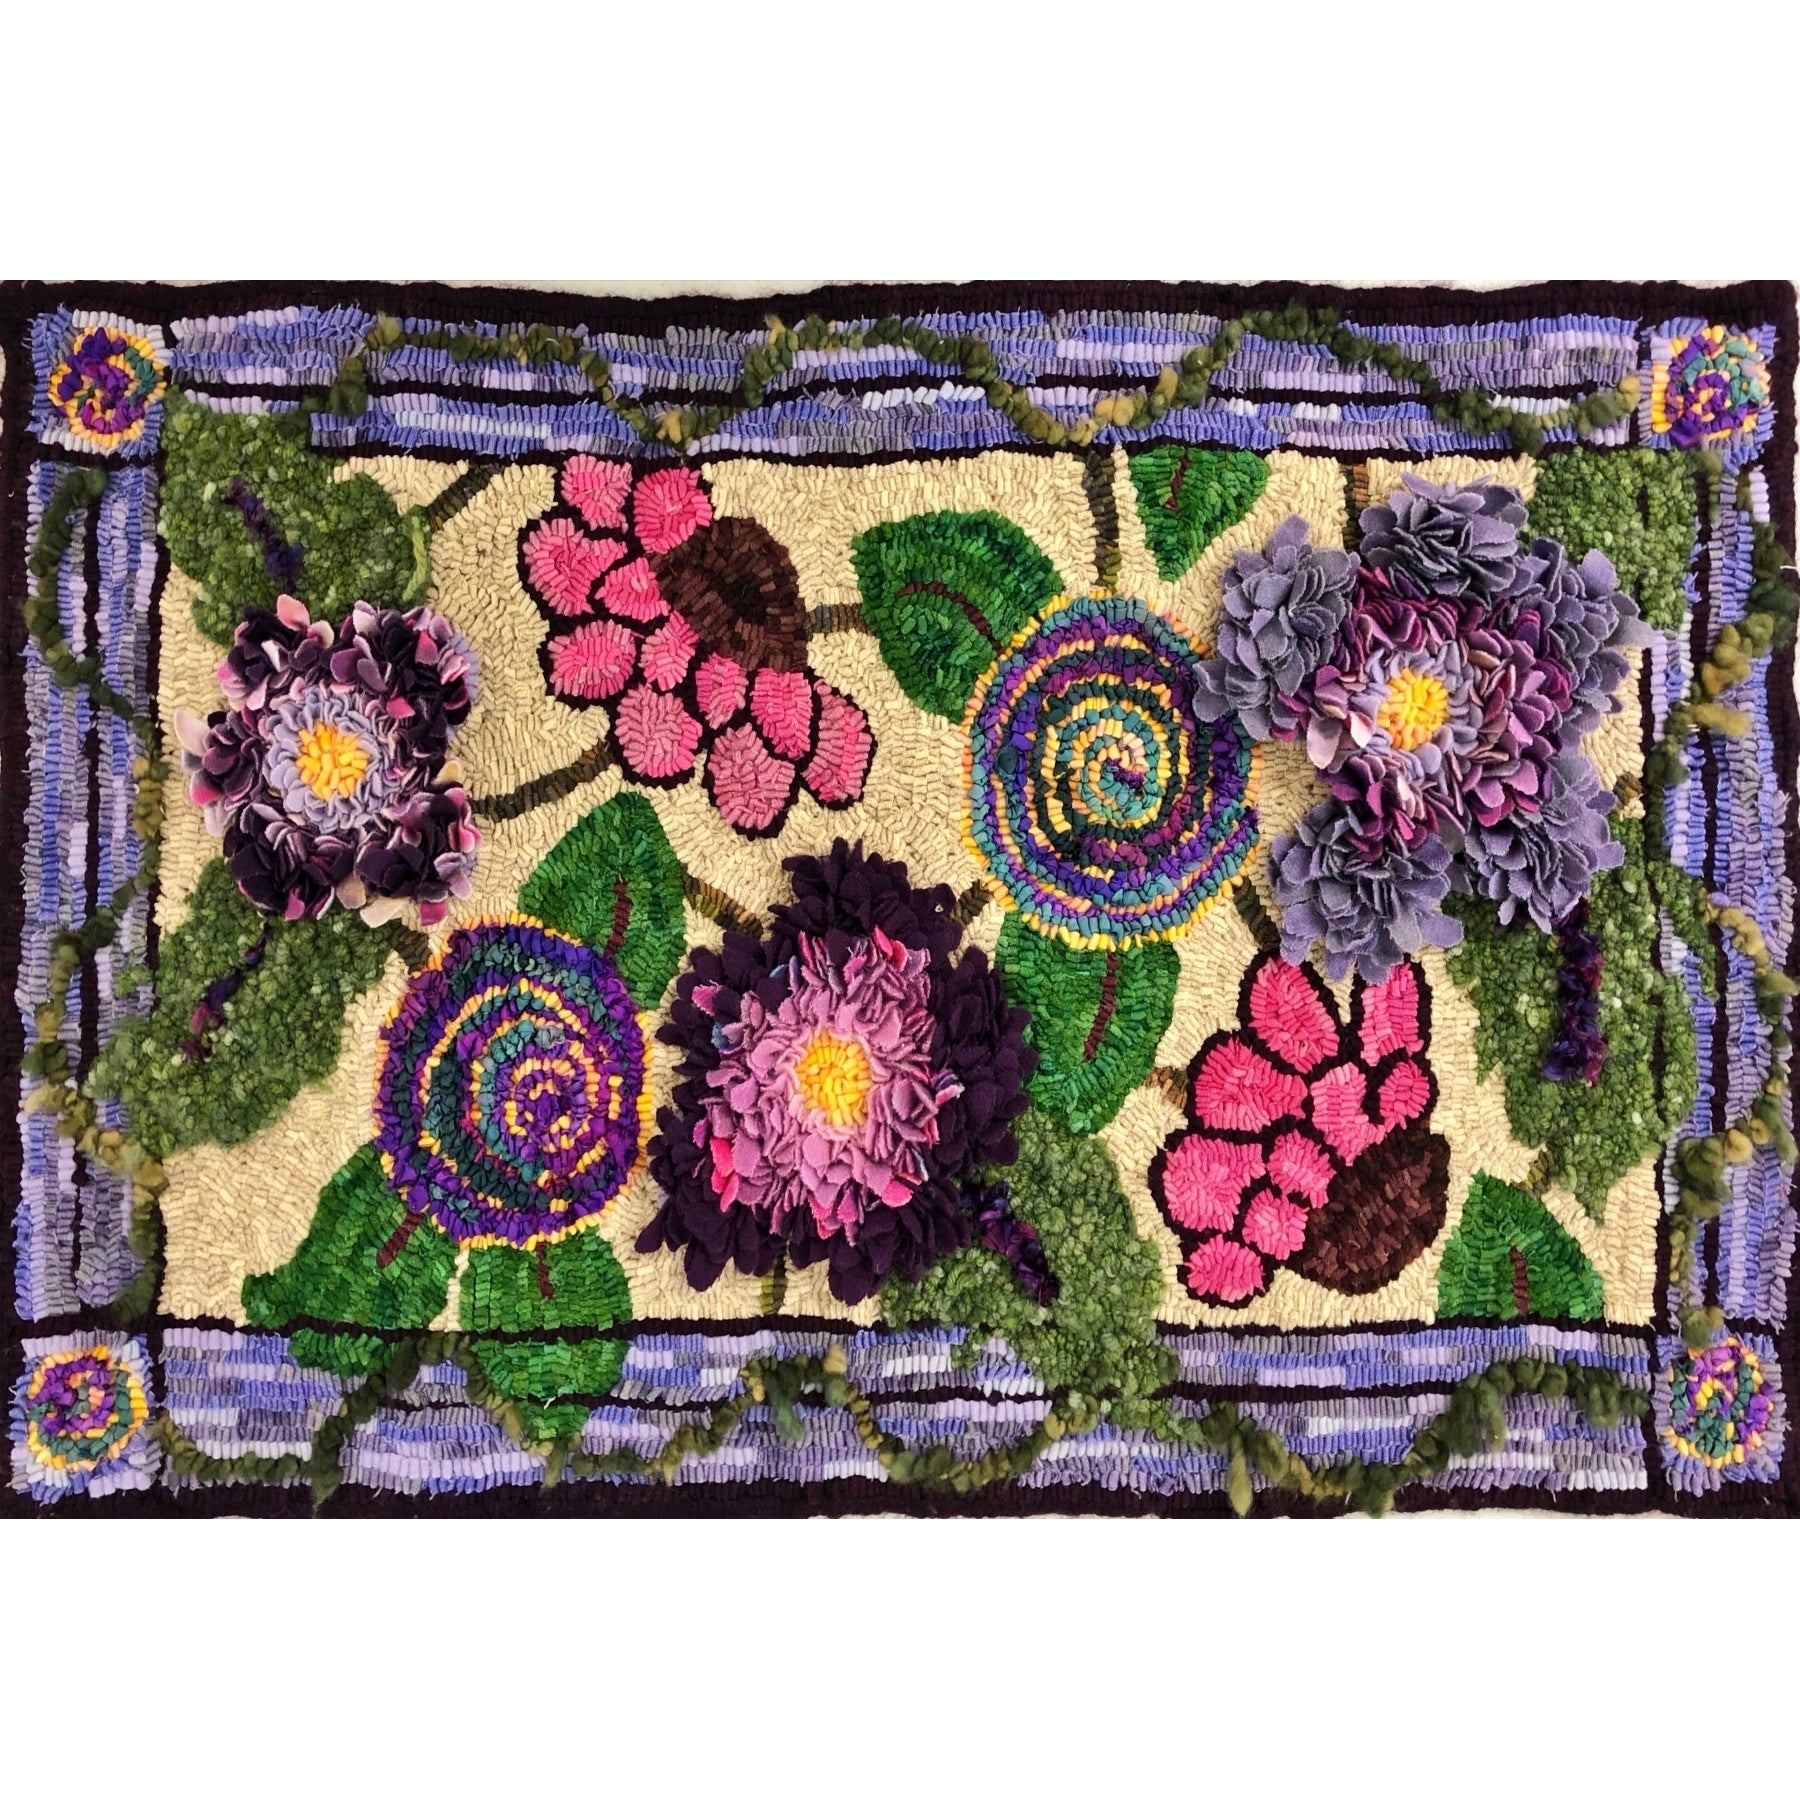 Stephanie's Garden, rug hooked by Karen DiGennaro